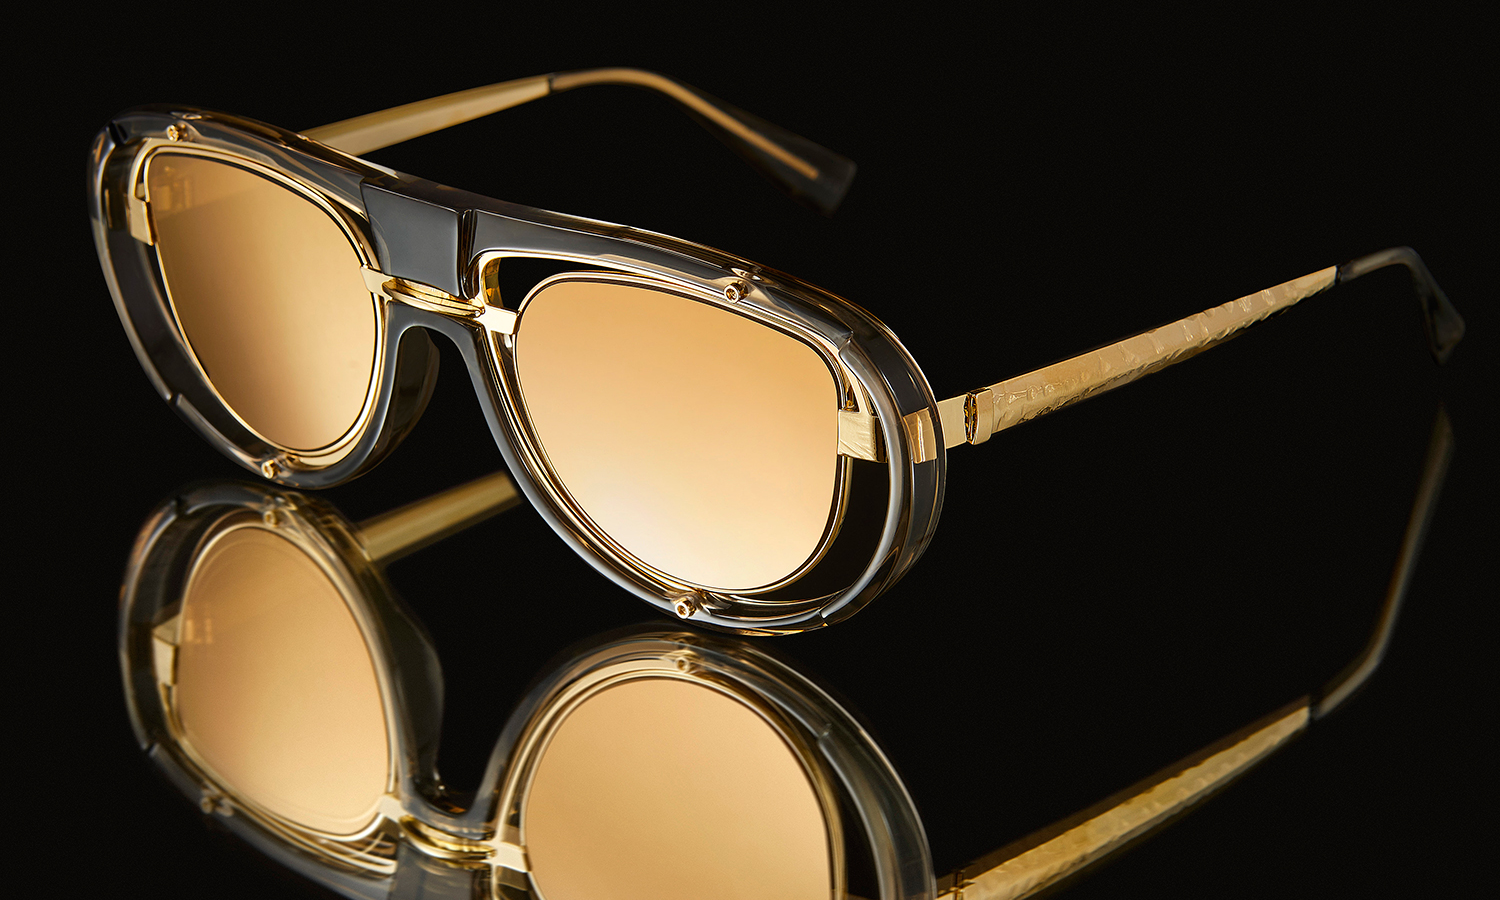 柏林眼镜品牌 KUBORAUM 推出新作「H92 GOLD」